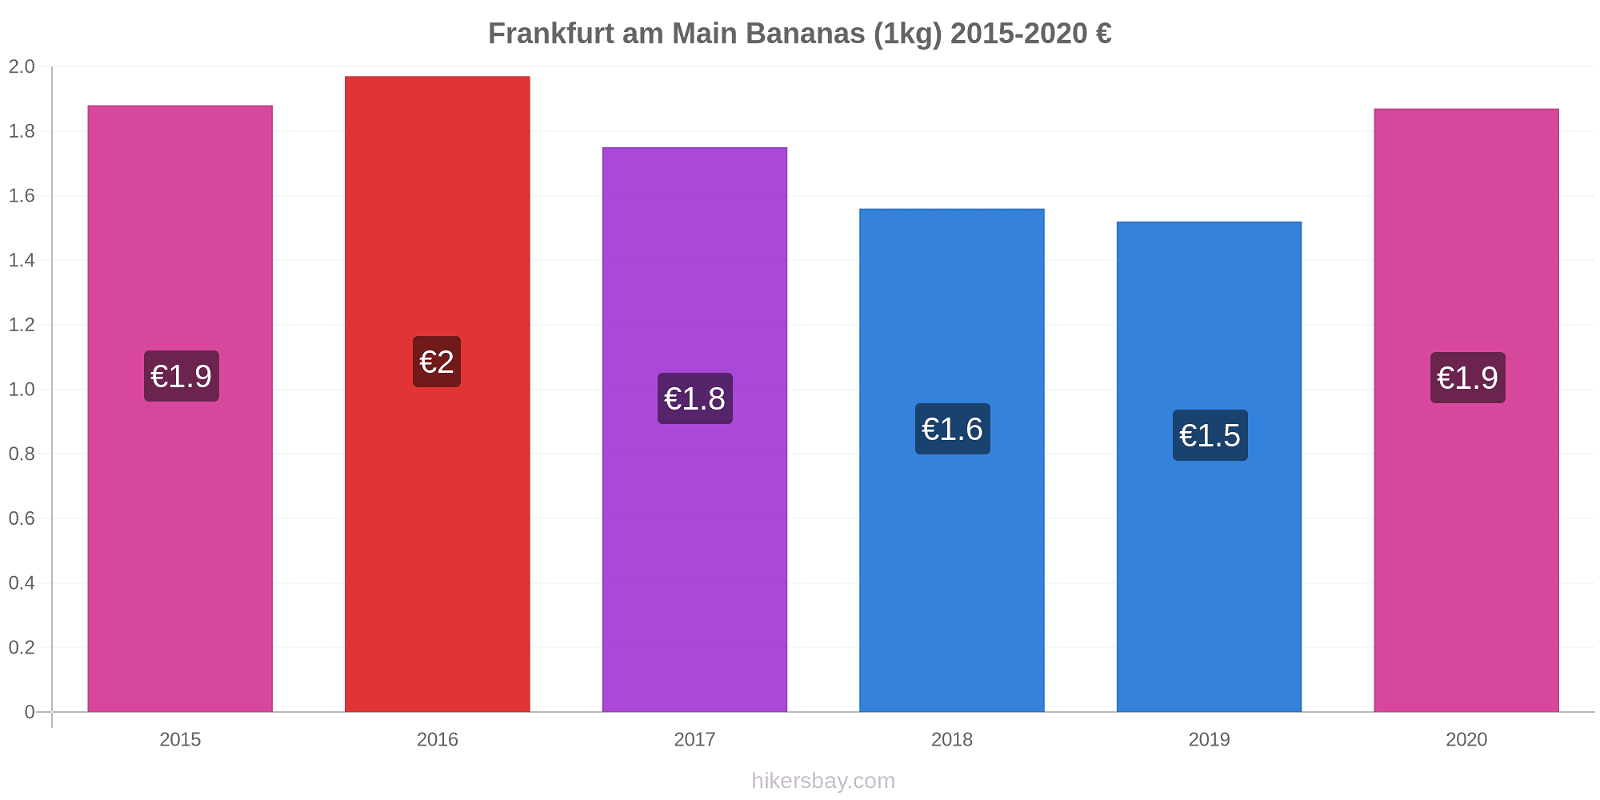 Frankfurt am Main variação de preço Banana (1kg) hikersbay.com